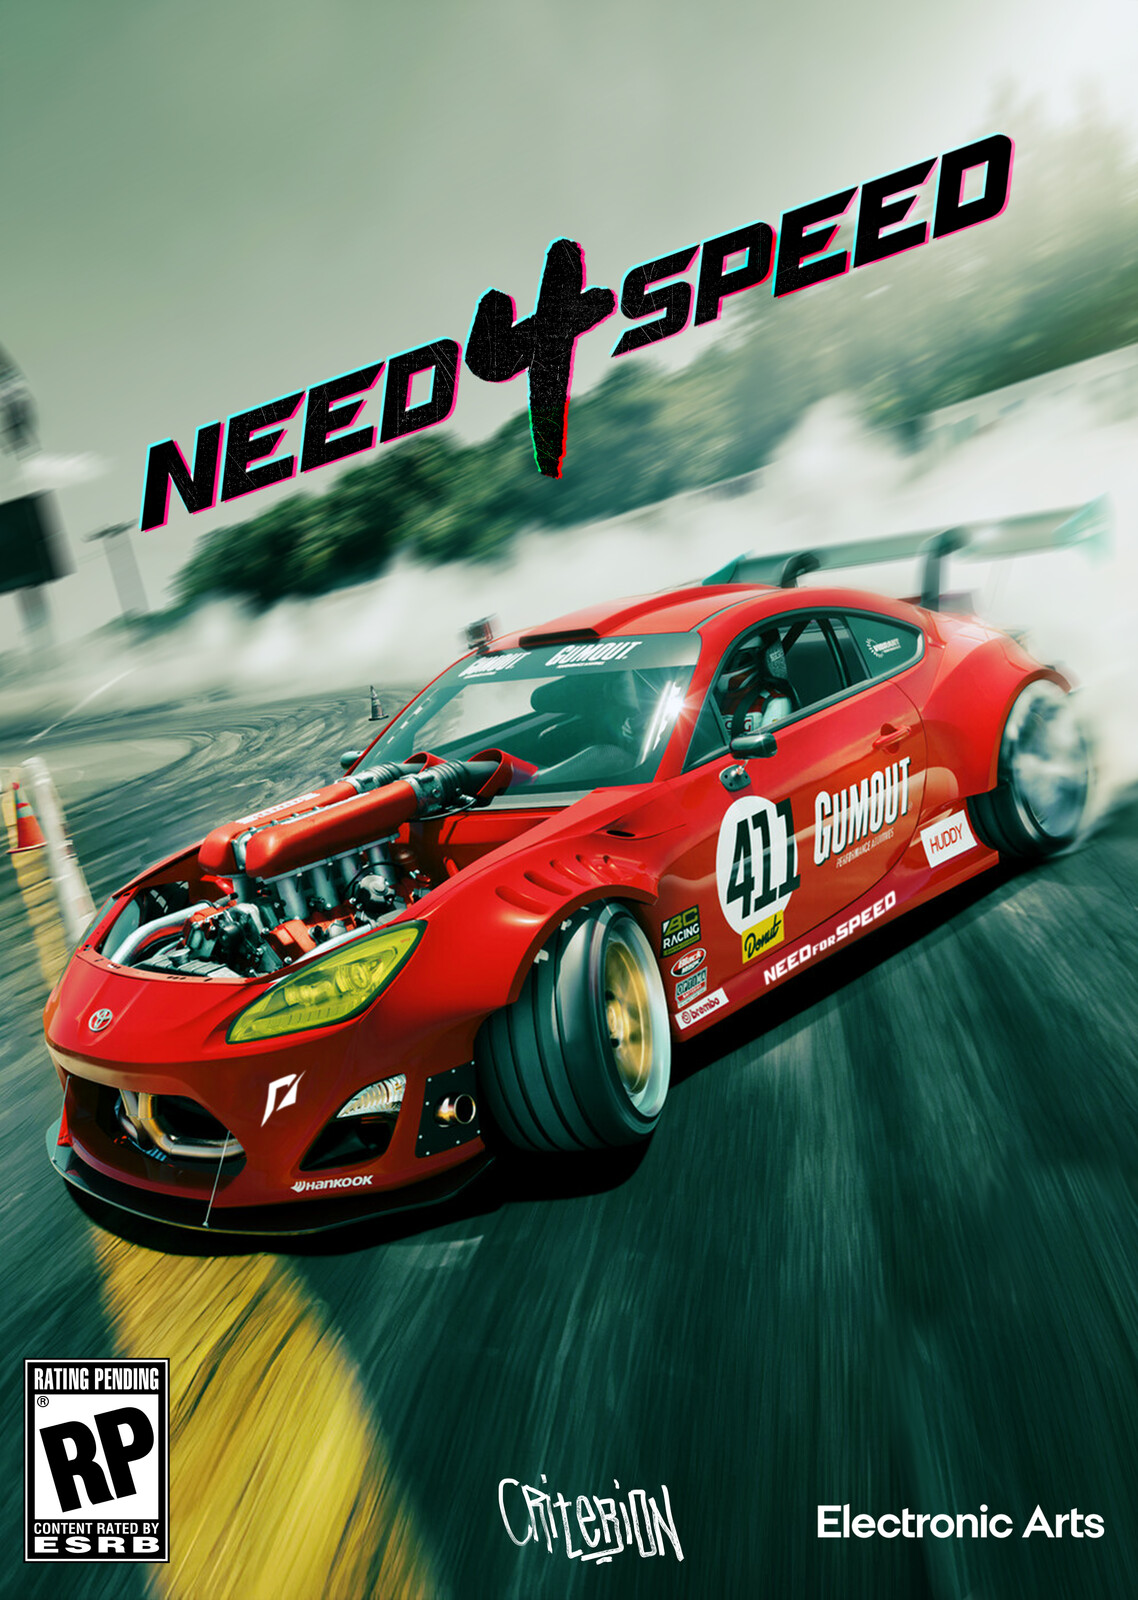 Need 4 Speed (Original Image by Arturo Thomas)